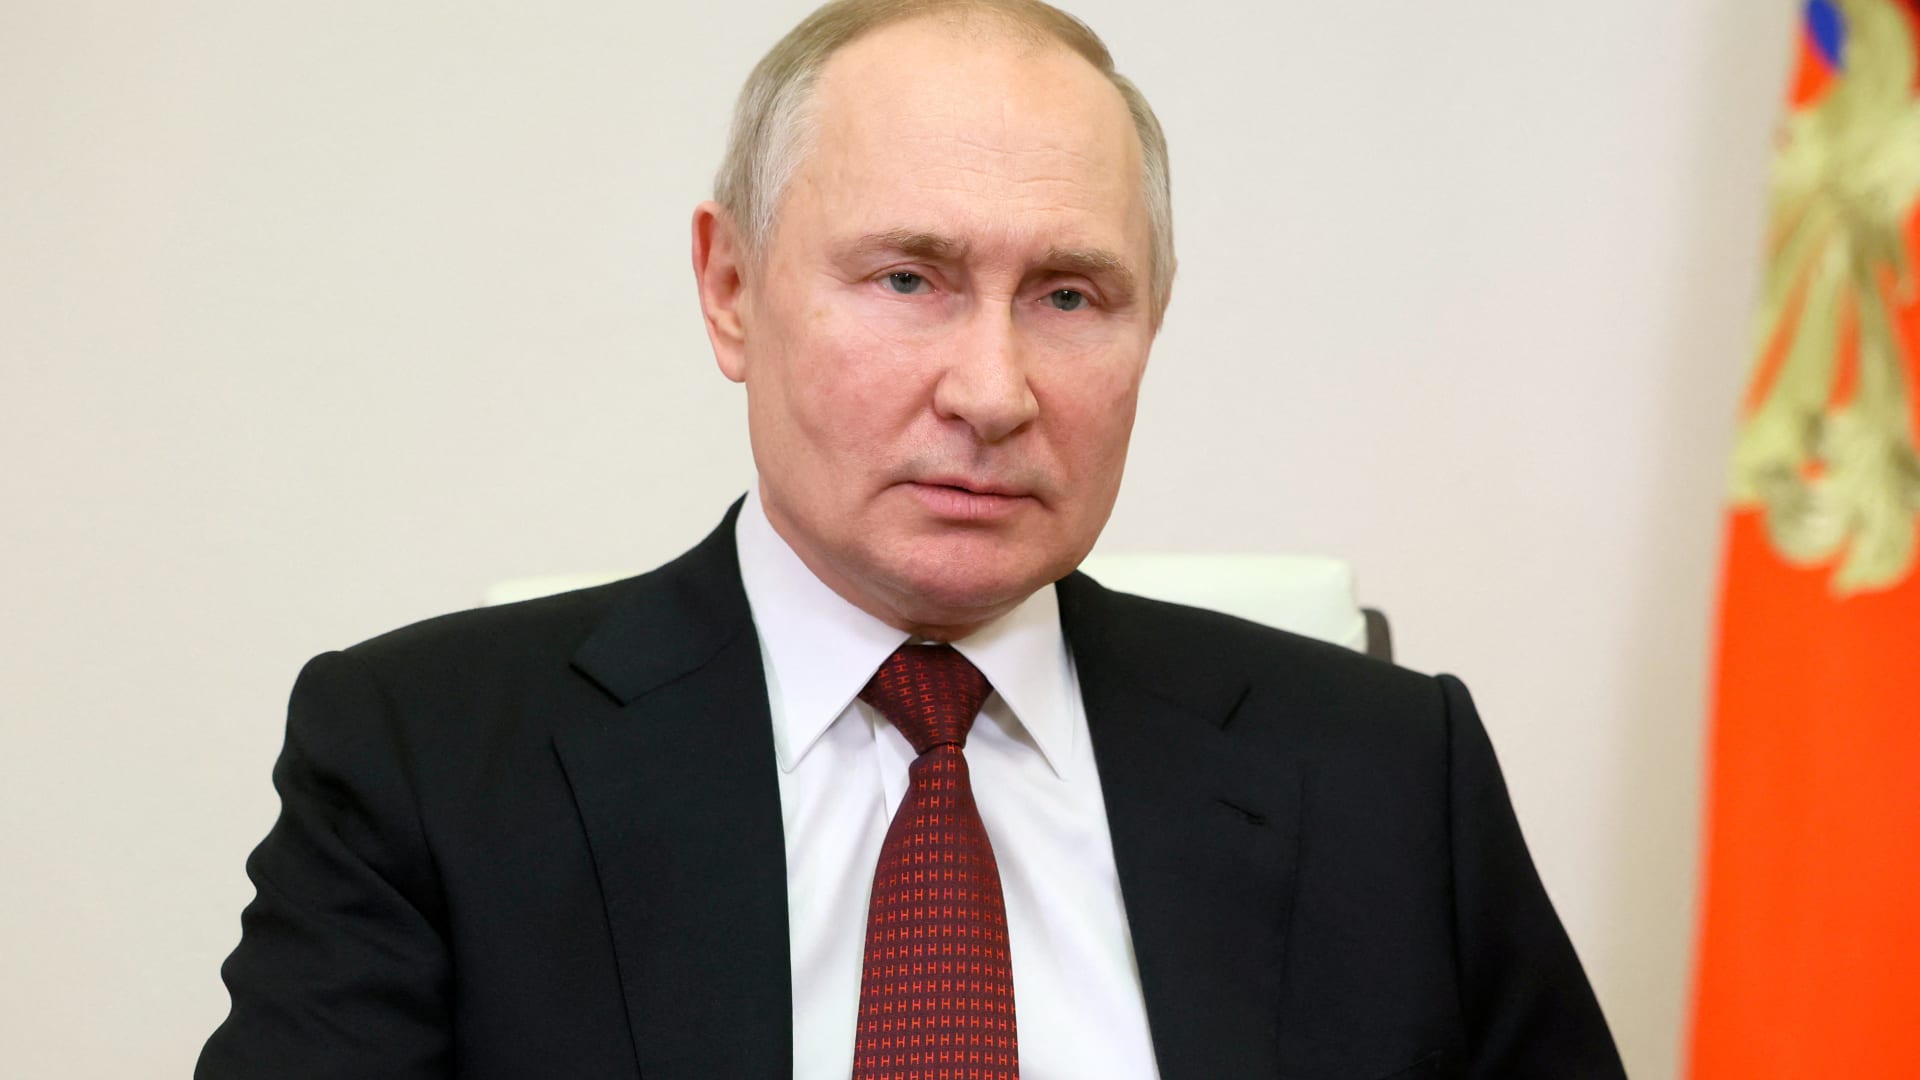 الرئيس الروسي فلاديمير بوتين في زيارة نادرة إلى بيلاروسيا.. وأوكرانيا: نخشى غزوًا واسع النطاق